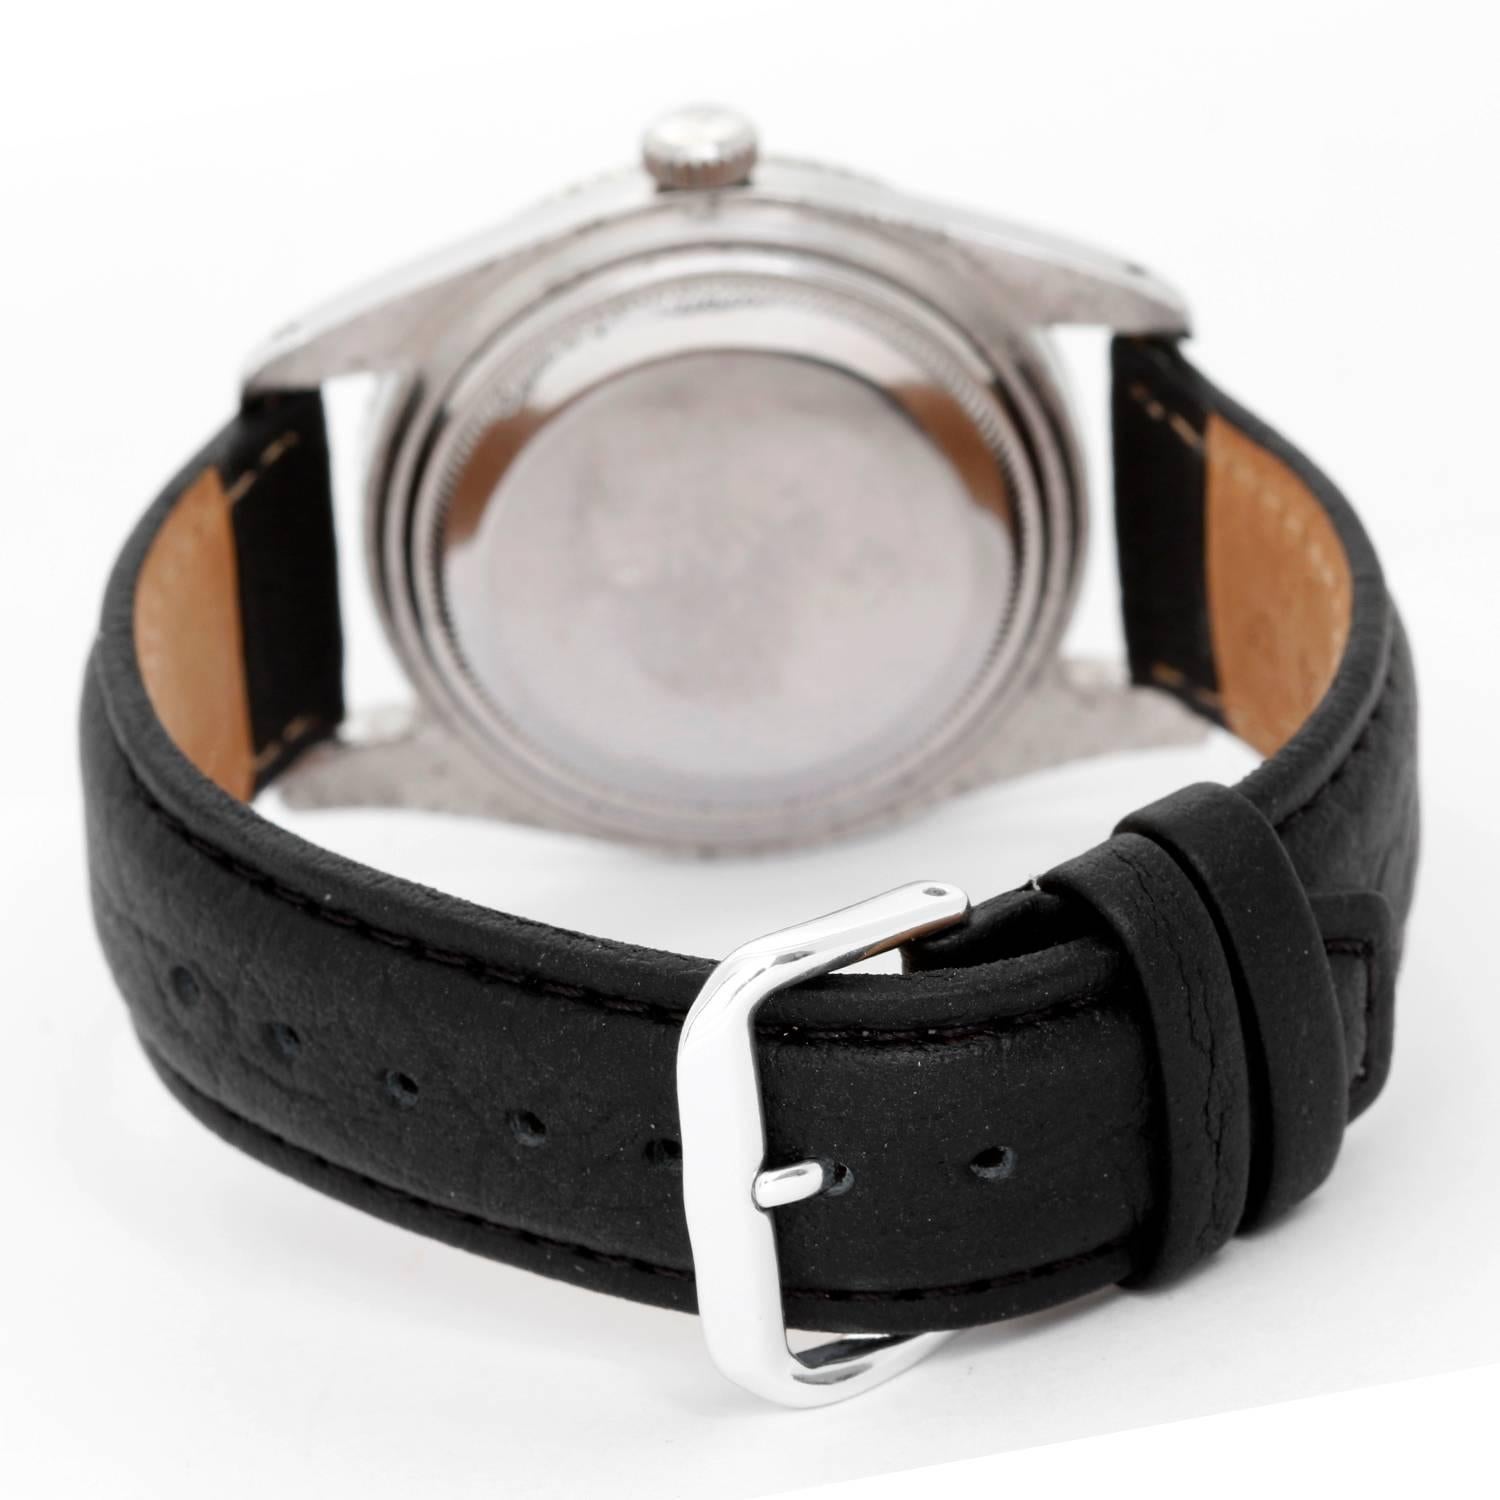 Rolex Stainless Steel James Bond Submariner Self Winding Wristwatch Ref 6536/1 1